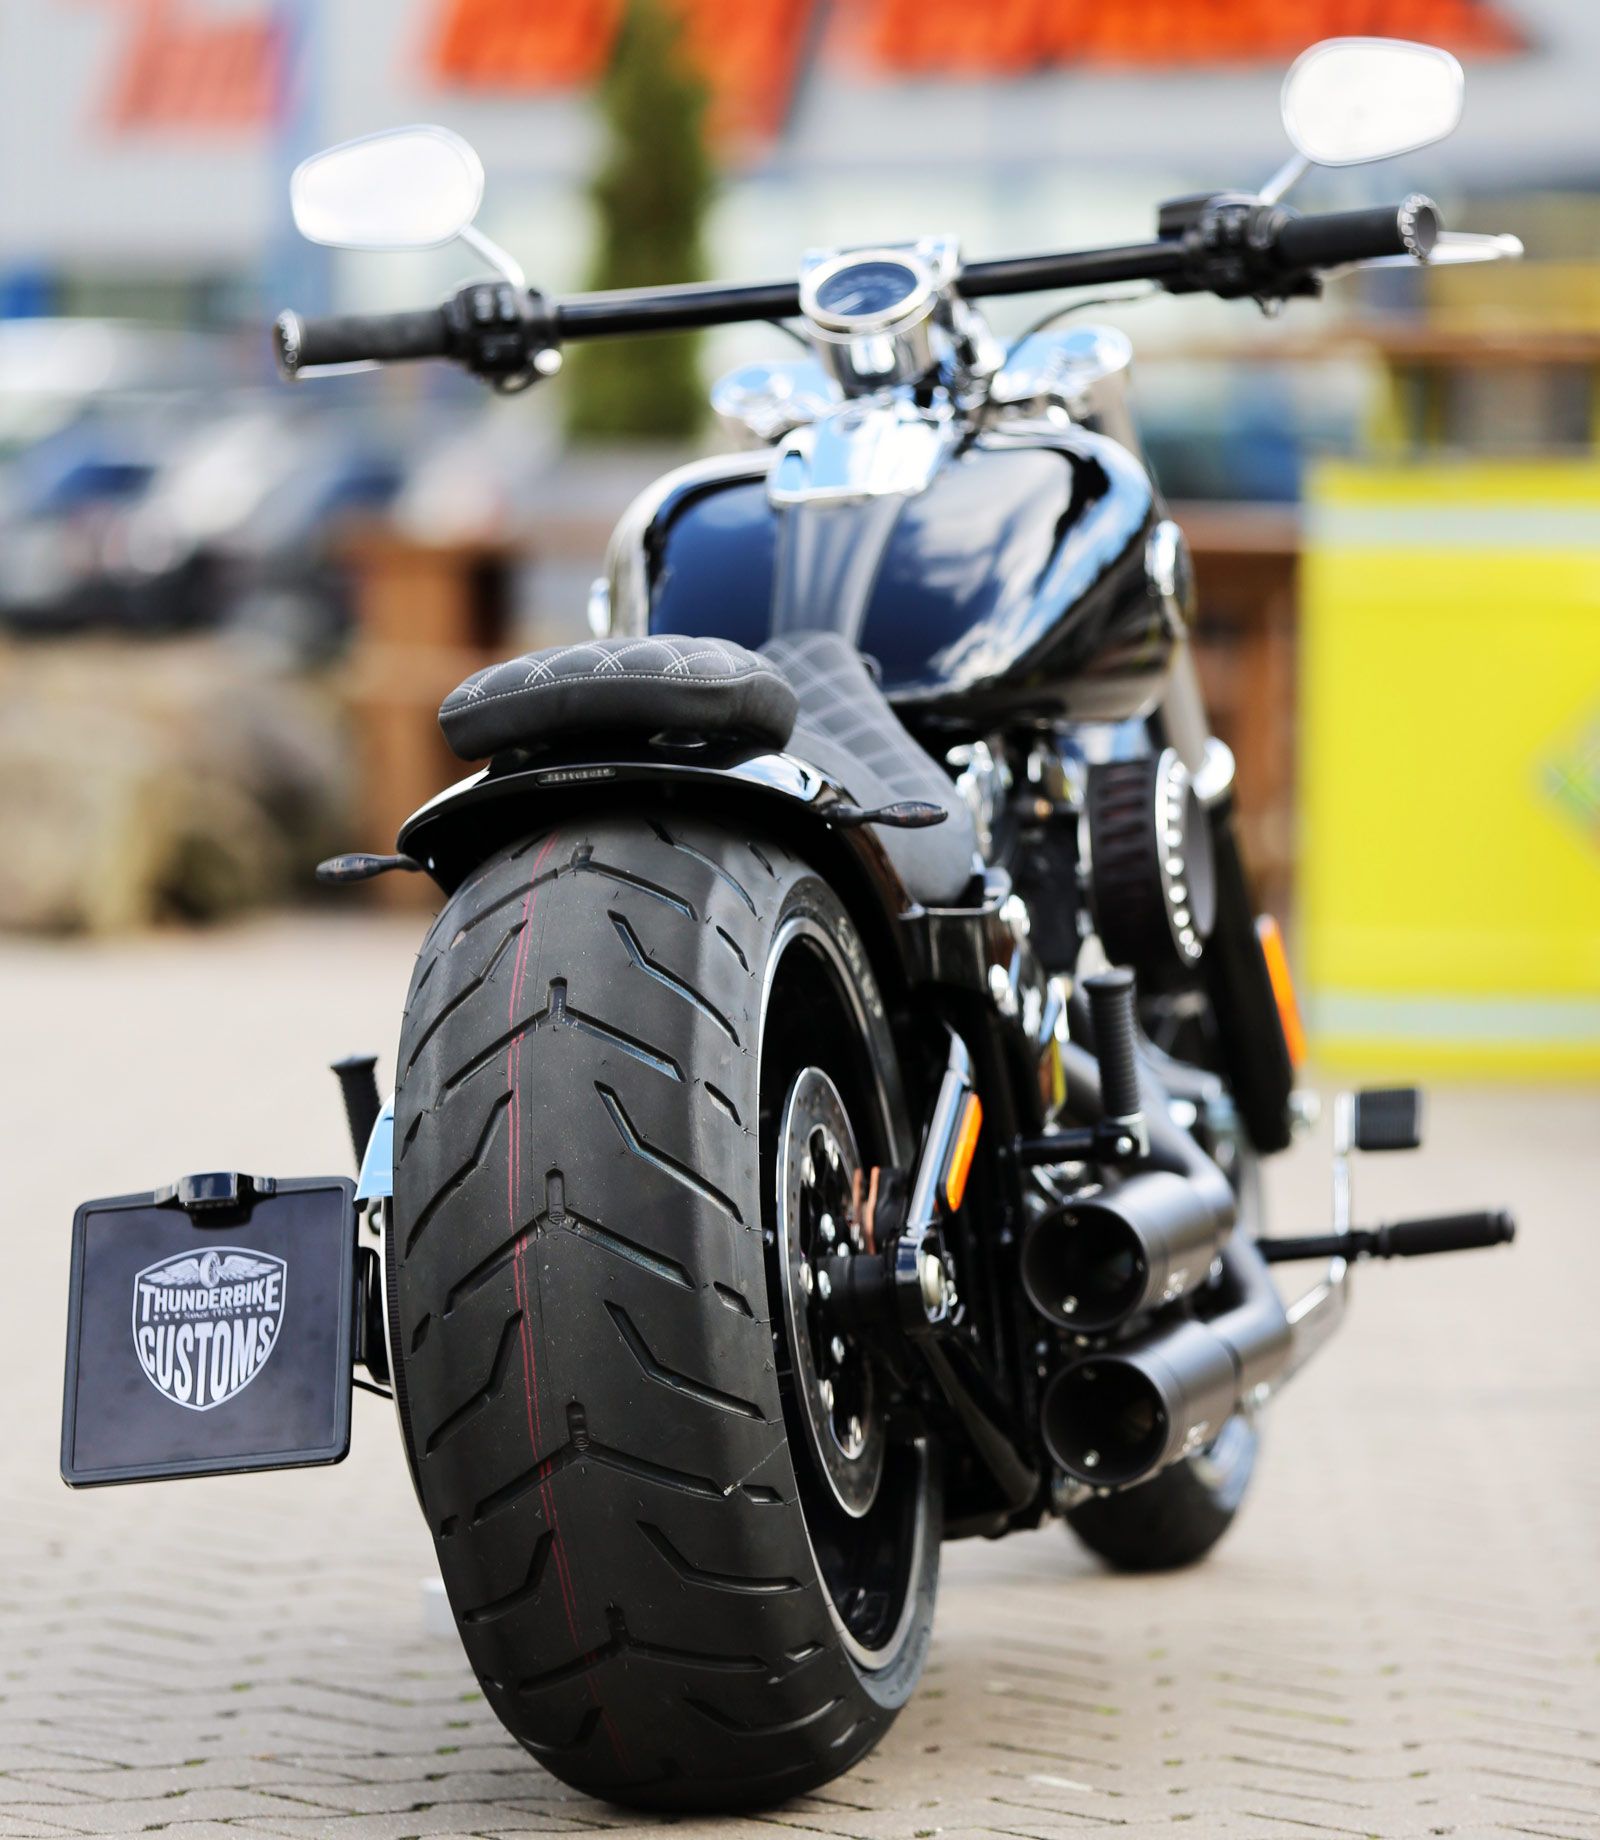 2015 Harley Davidson Breakout For Sale Off 69 Medpharmres Com